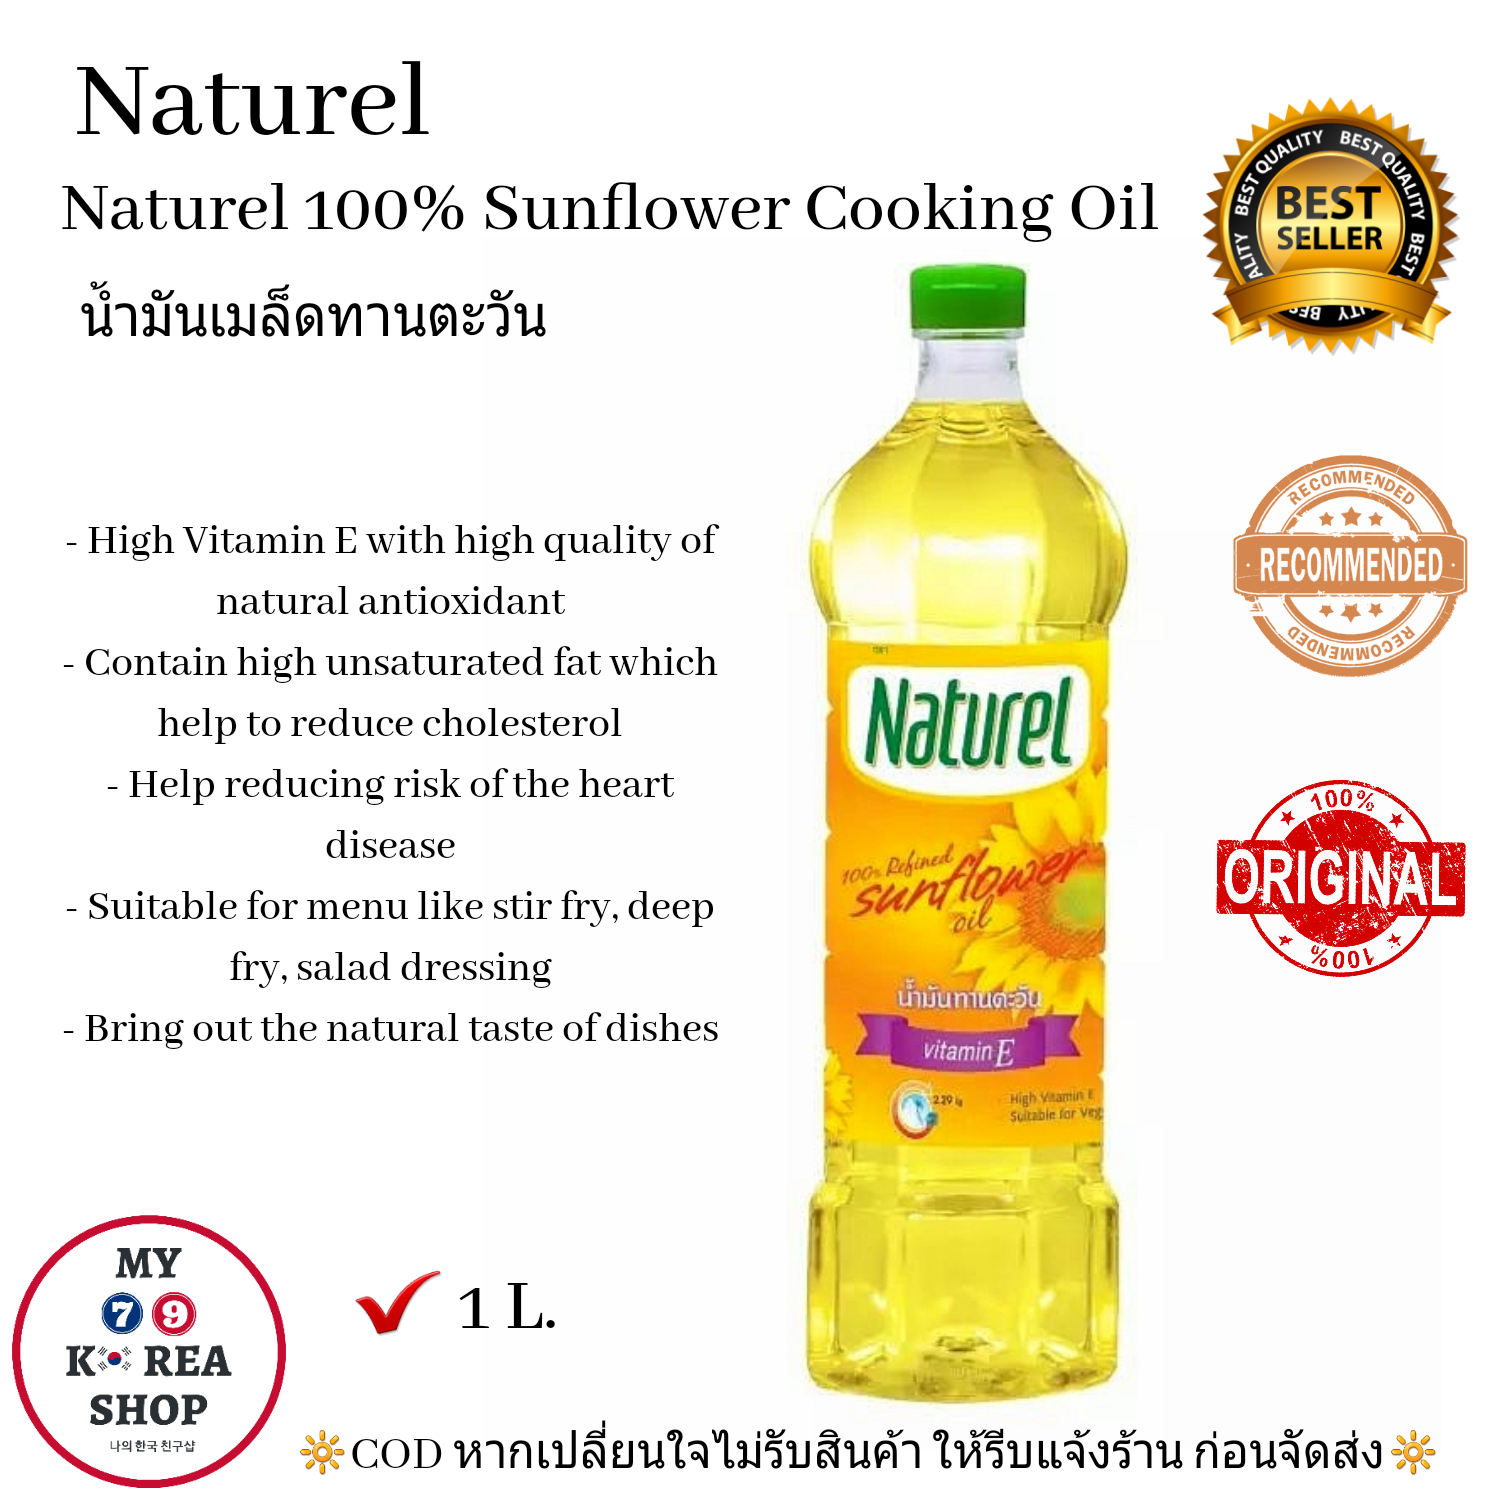 Naturel 100% Sunflower Cooking Oil (1ลิตร 1 L. )น้ำมันเมล็ดดอกทานตะวัน